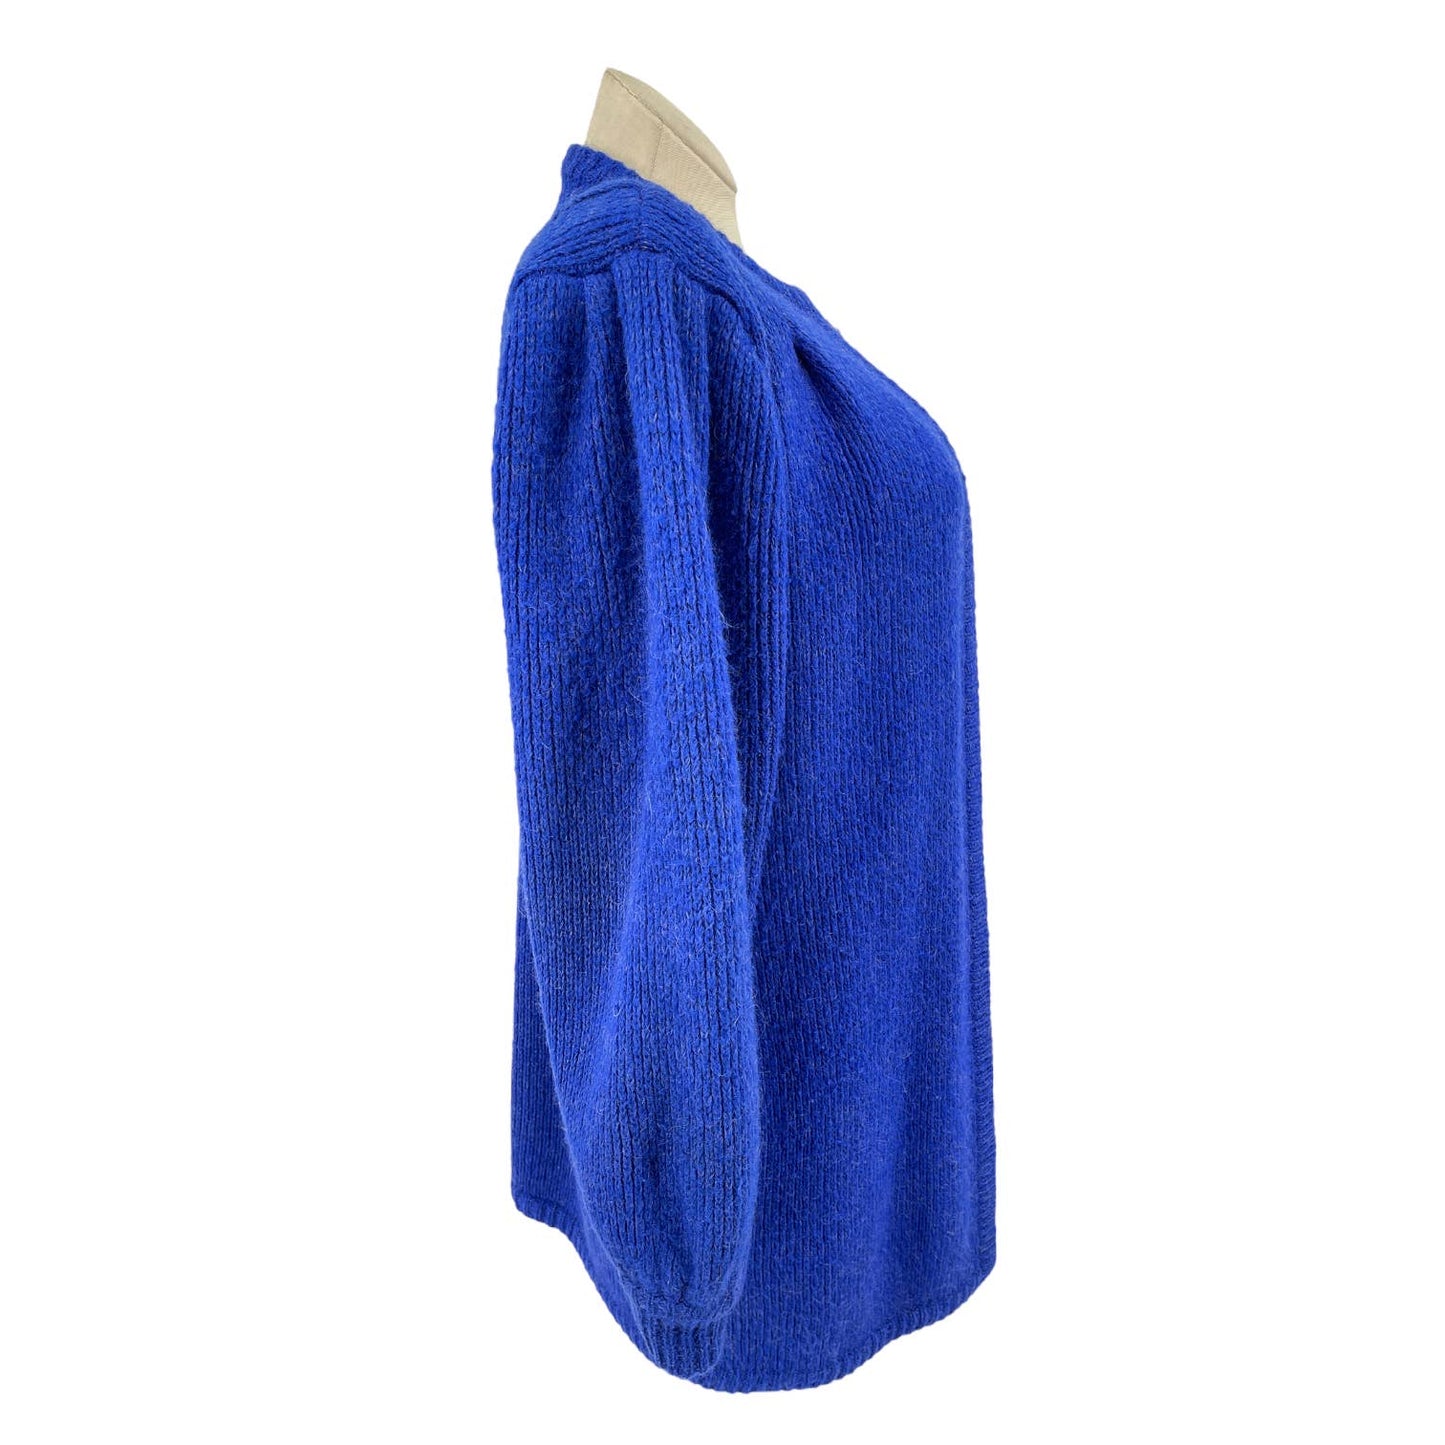 Vintage 80s Cobalt Blue Wool Blend Cardigan Sweater Puff Shoulder Epitomé Size M